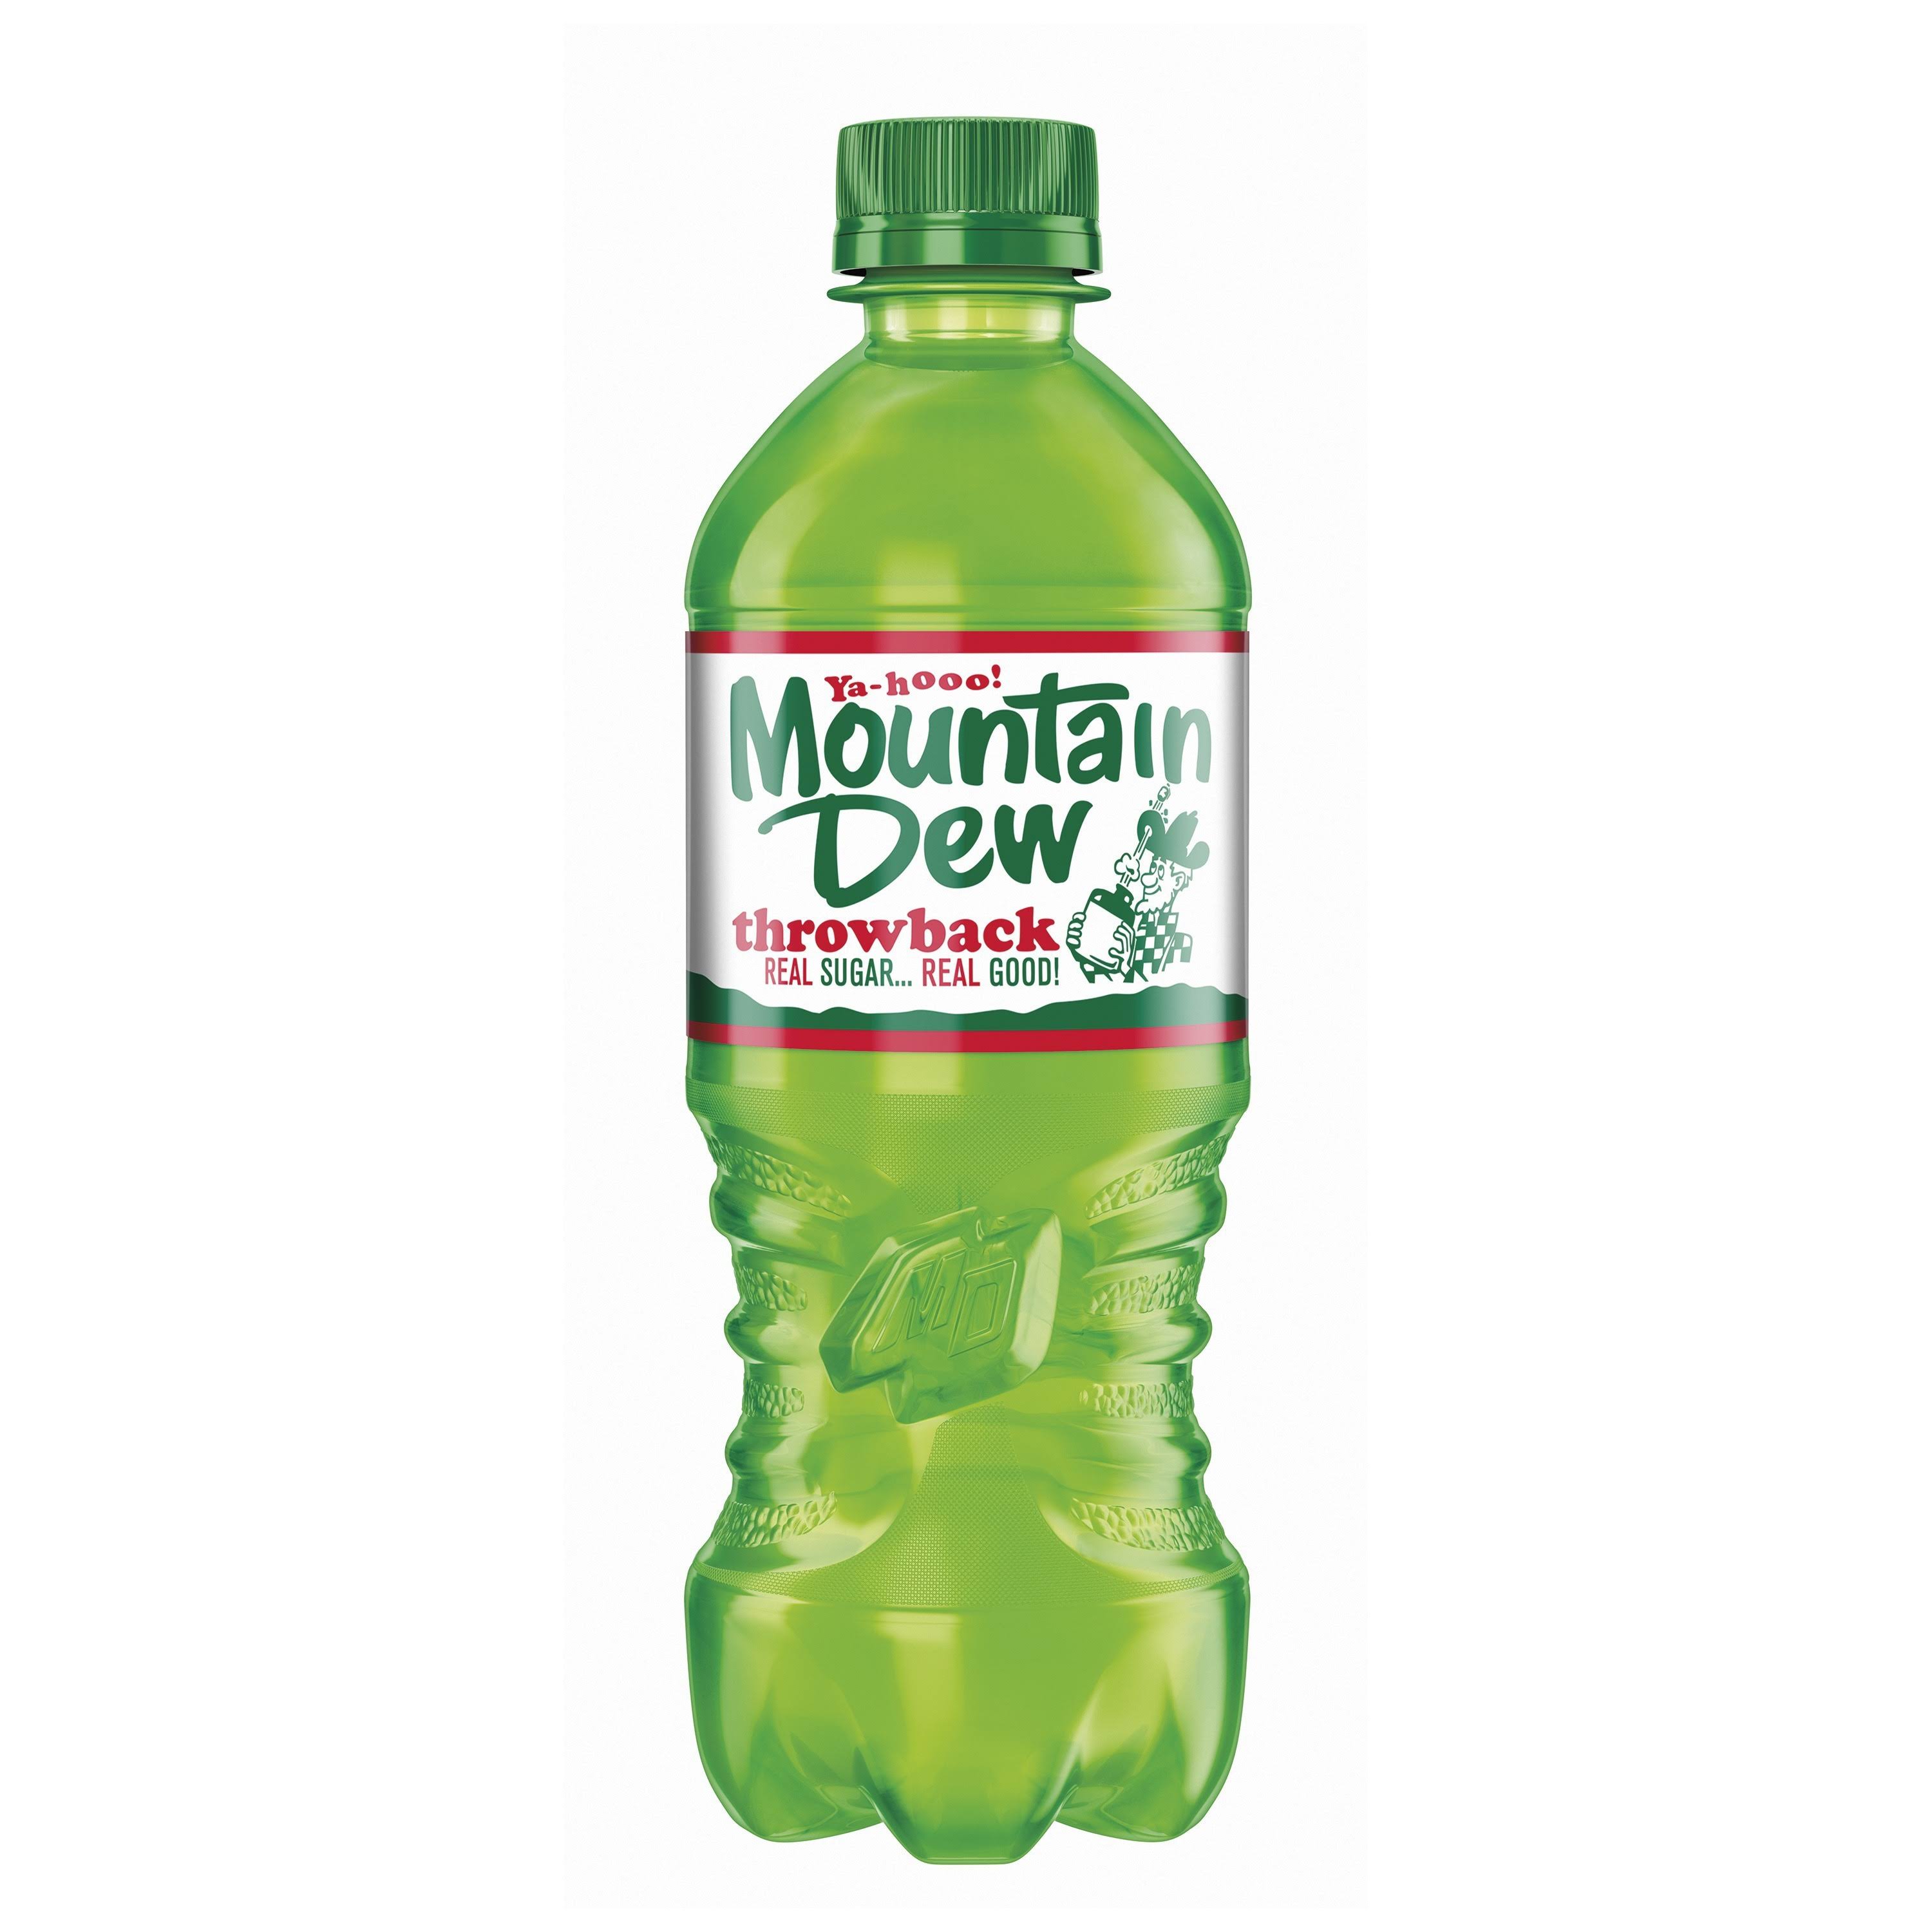 Mountain Dew Throwback Soda - 20oz